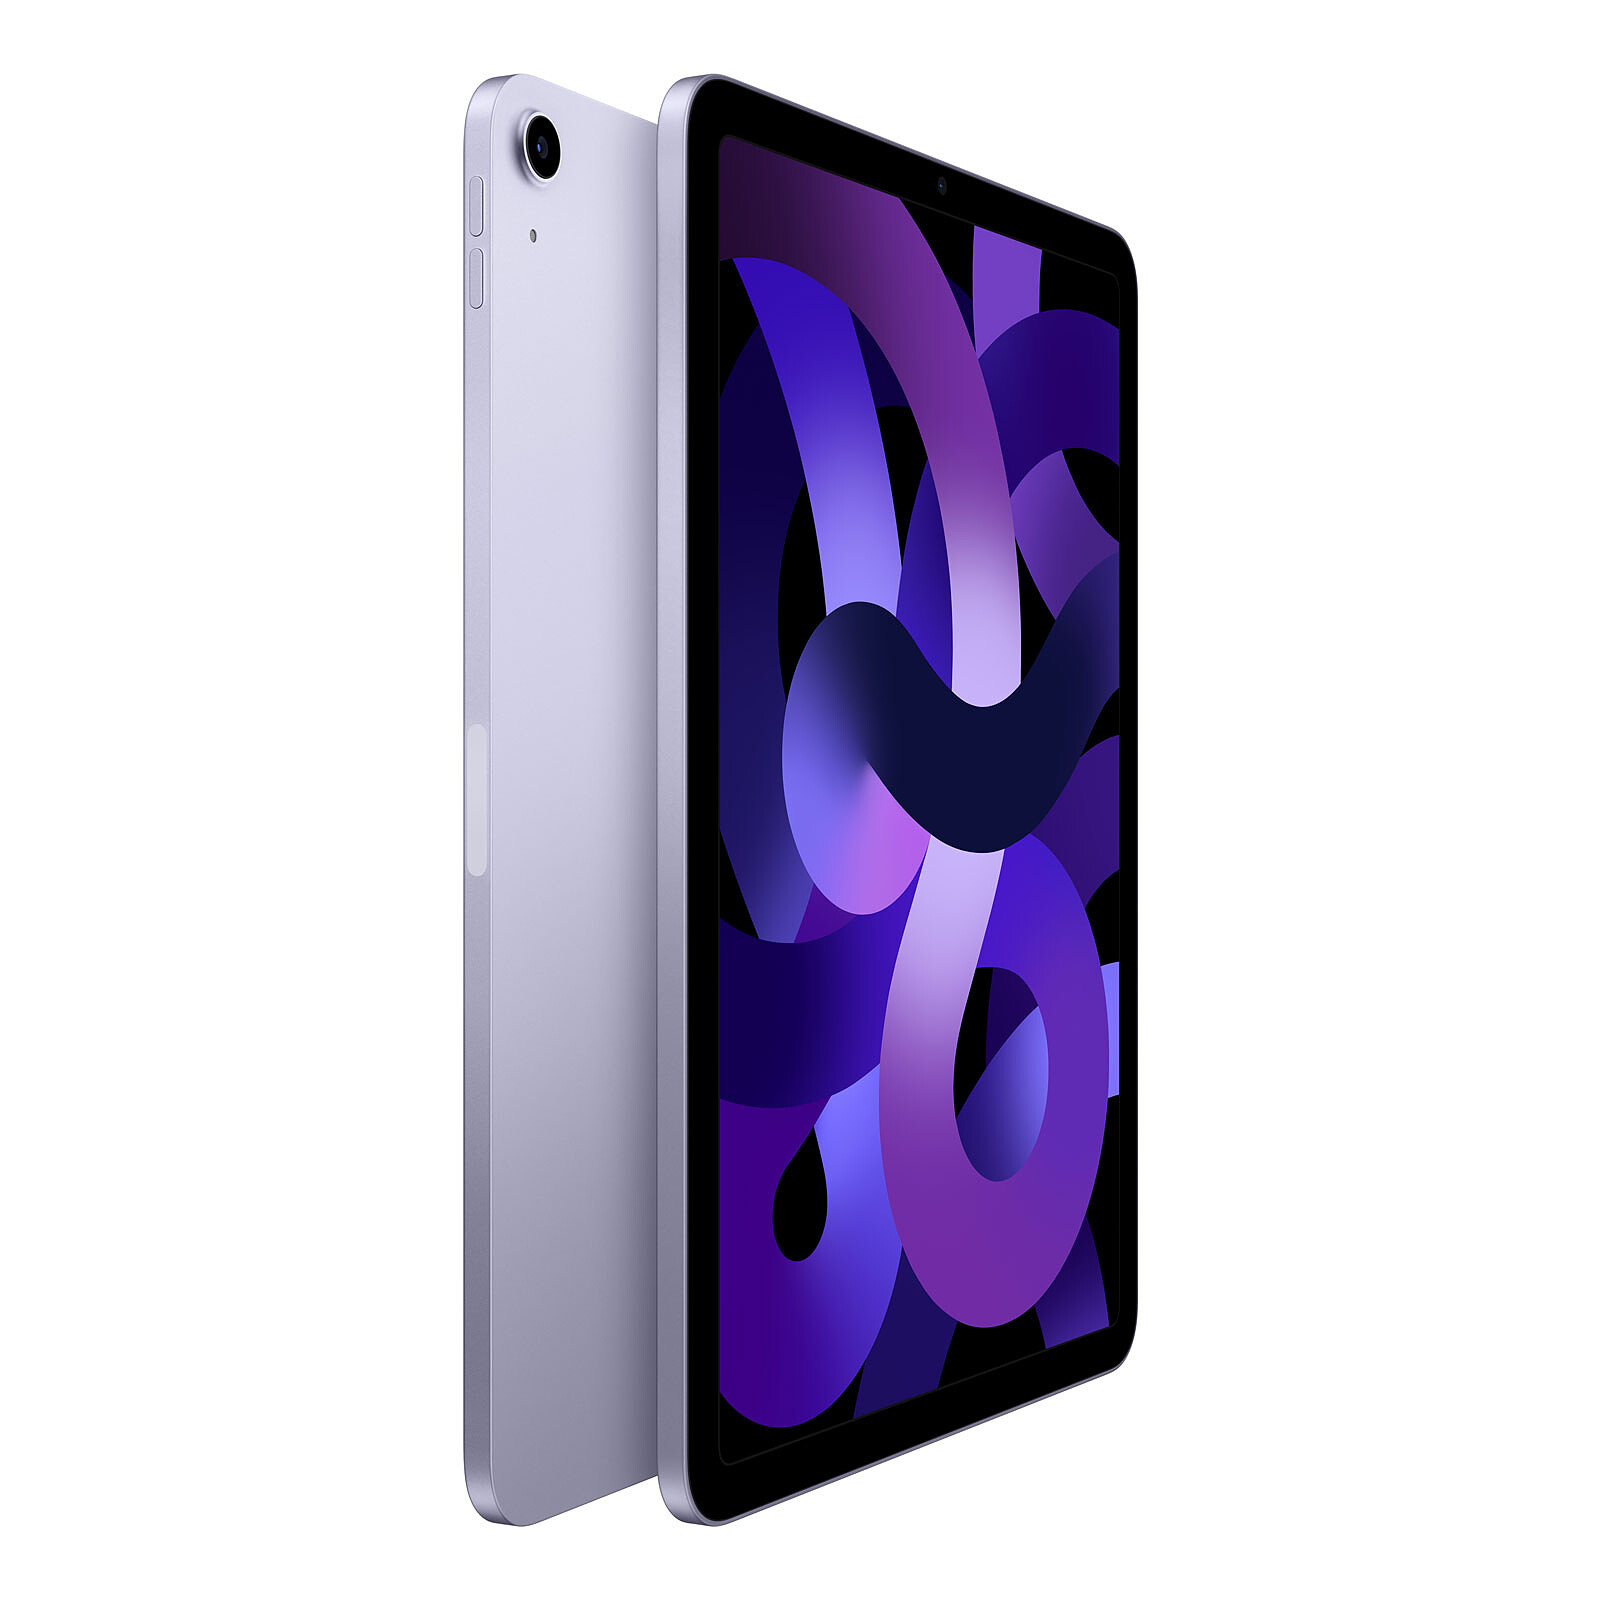 Apple iPad Air 4 Retina 10.9, 64GB, WiFi, Oro Rosa (4.ª